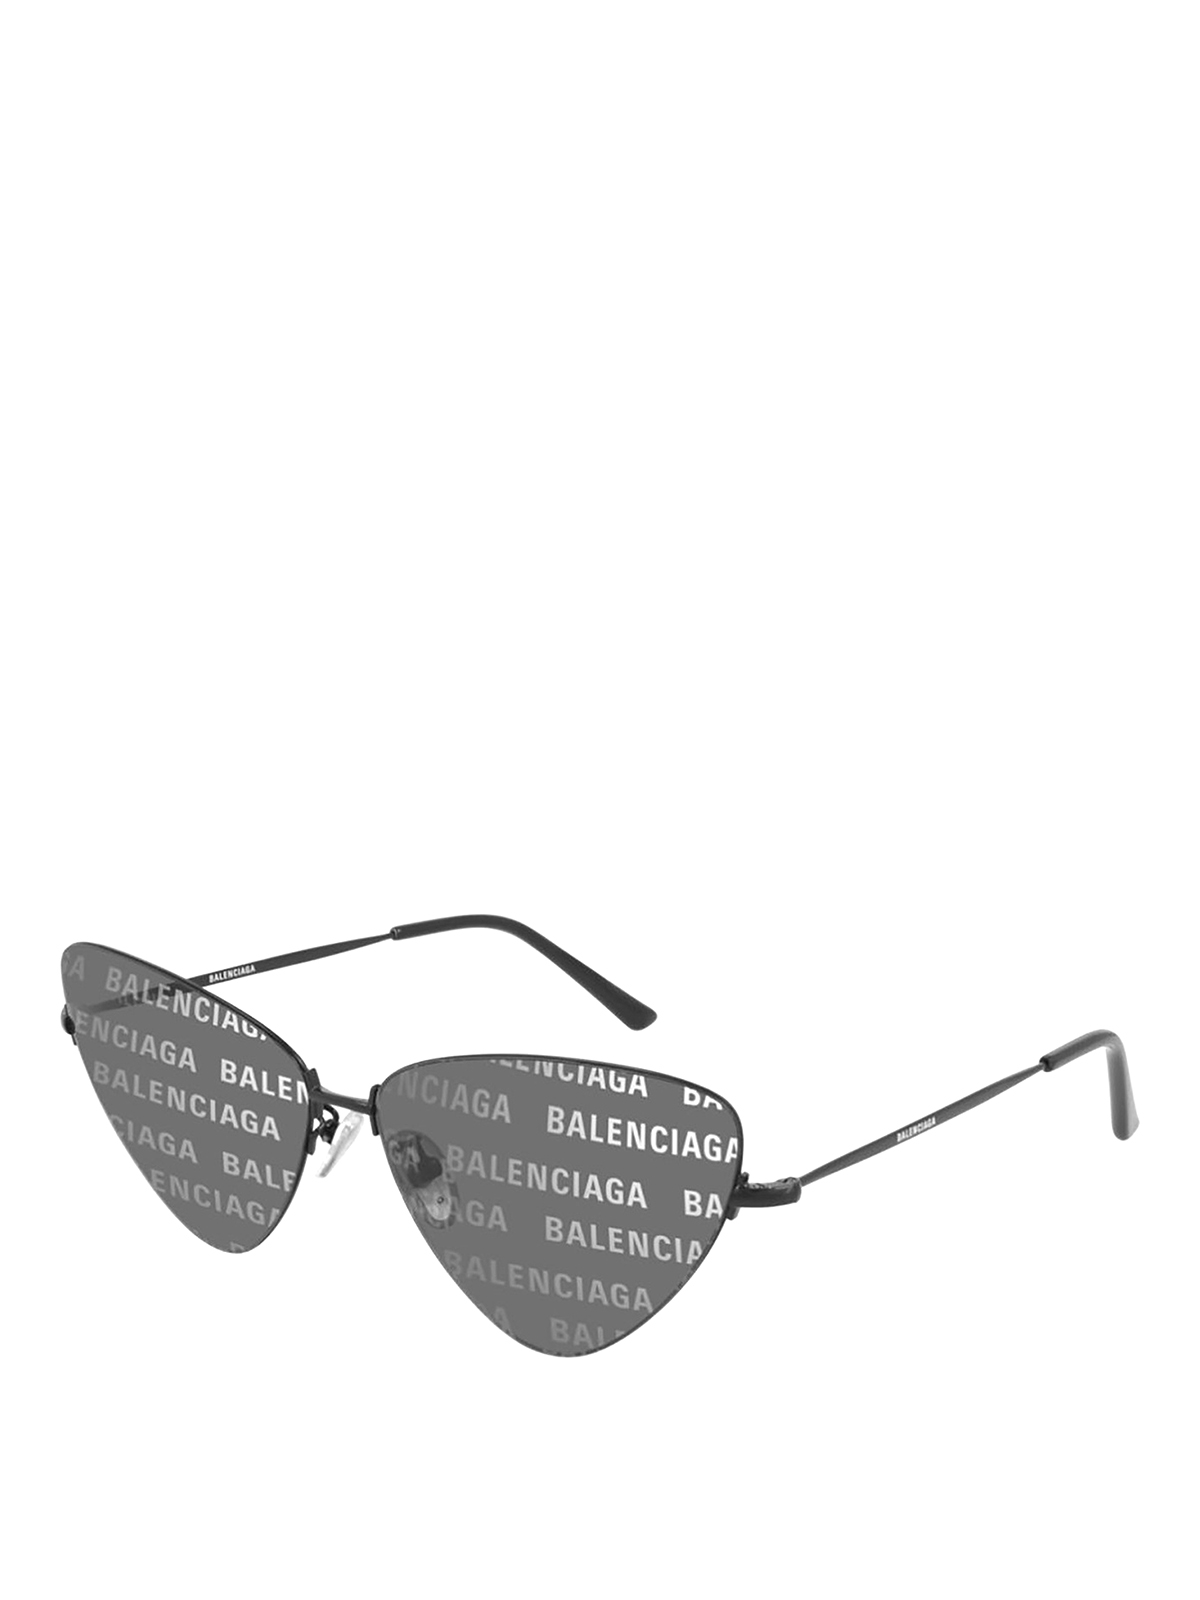 Balenciaga Invisile Xxl Sunglasses In Black